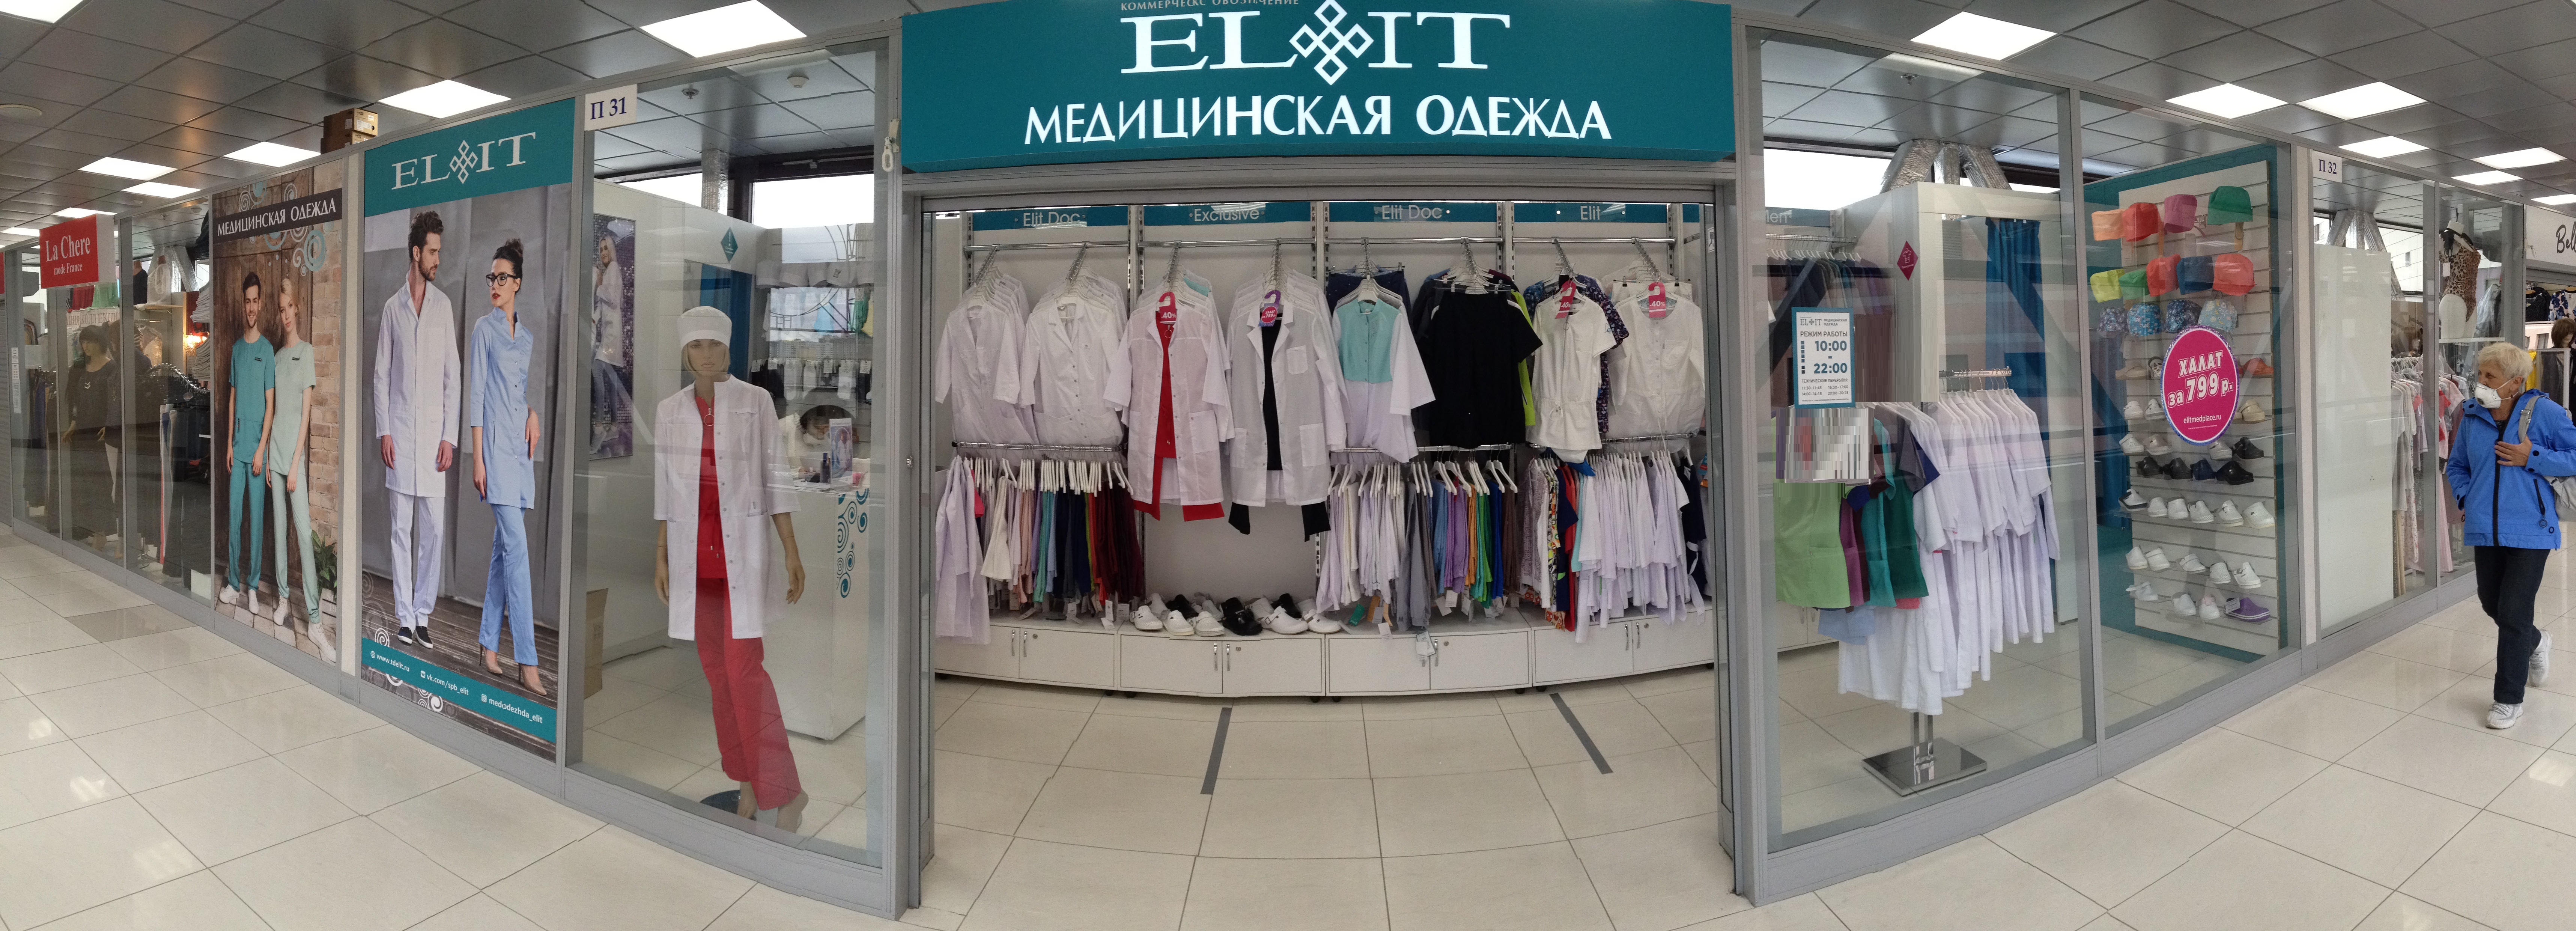 Магазин Одежды Элит